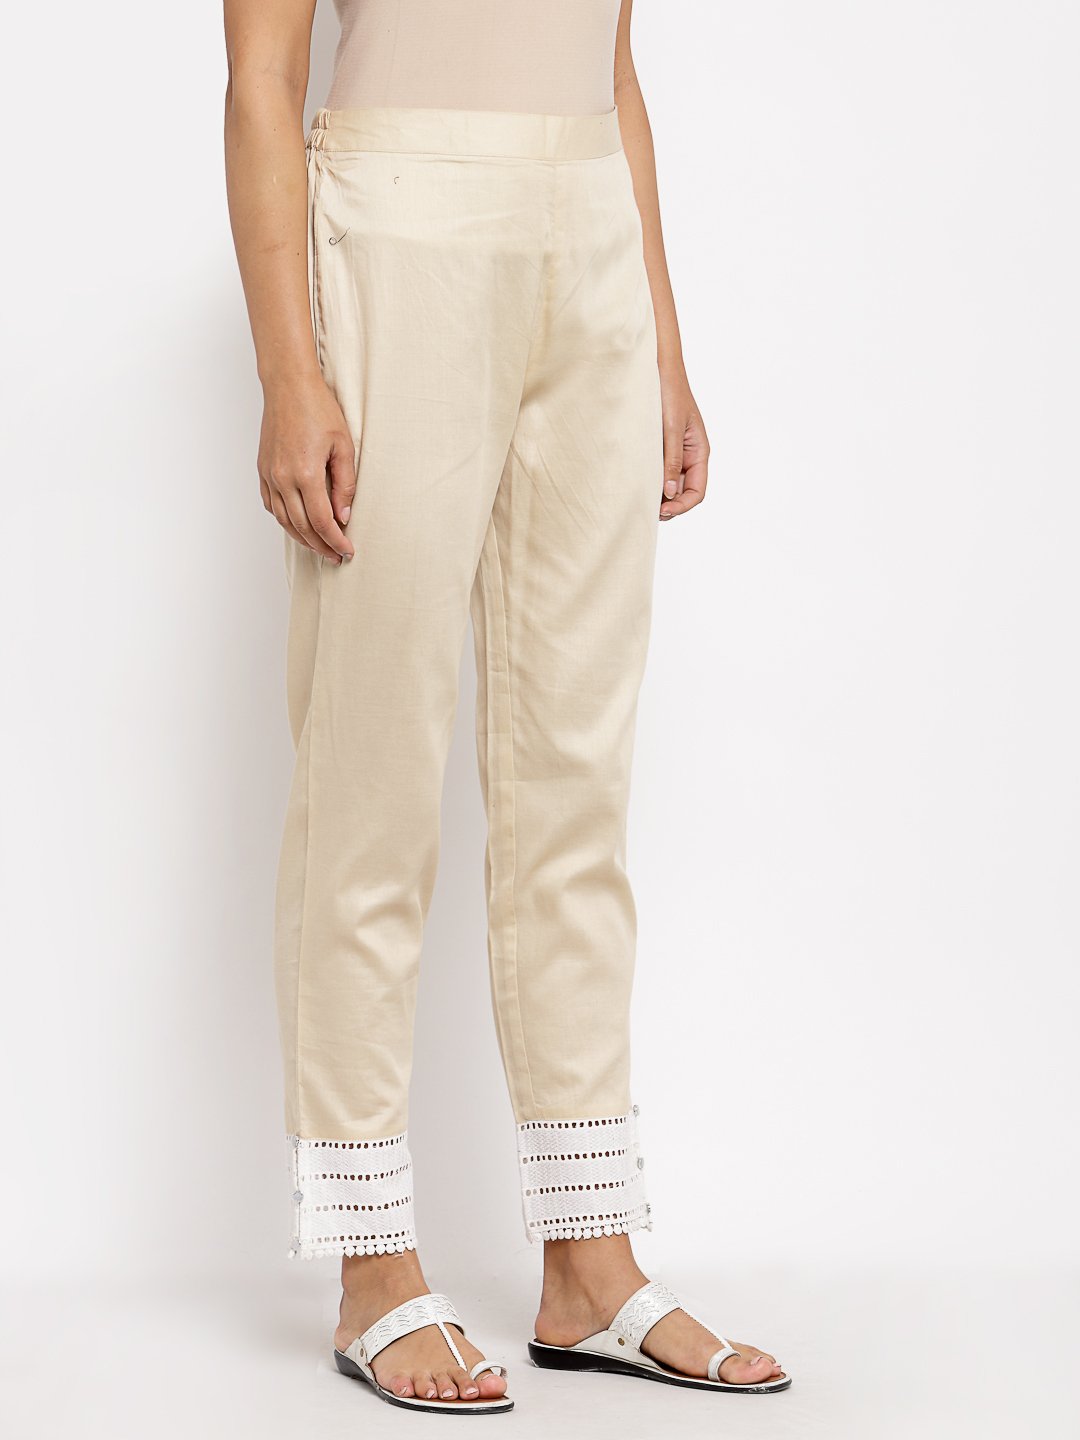 Women's Cream Cotton Solid Casual Trouser - Myshka